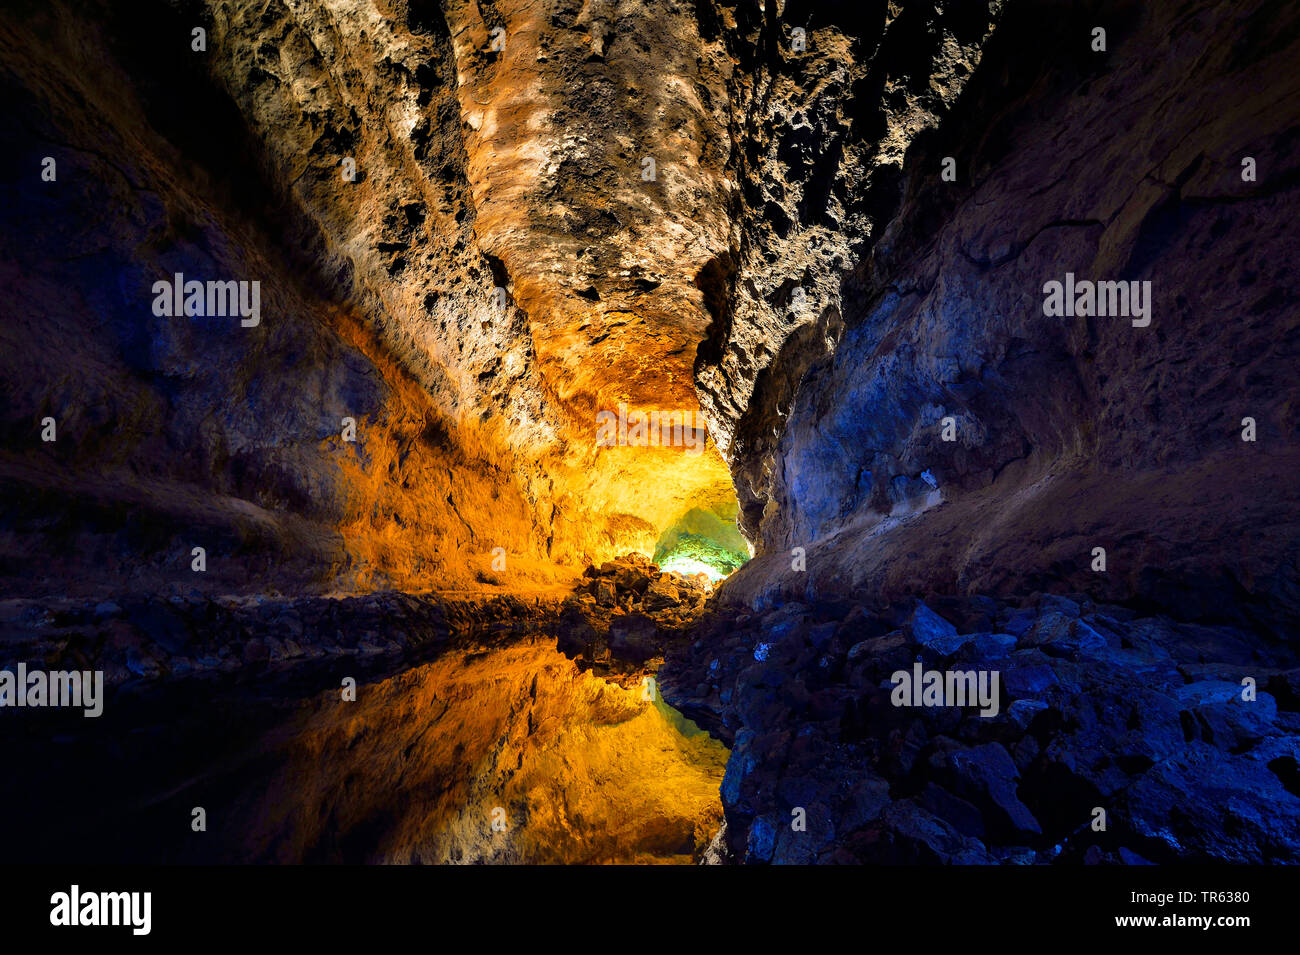 Beleuchtung in der Cueva Cuevas de los Verdes, Canary Islands, Lanzarote Stock Photo